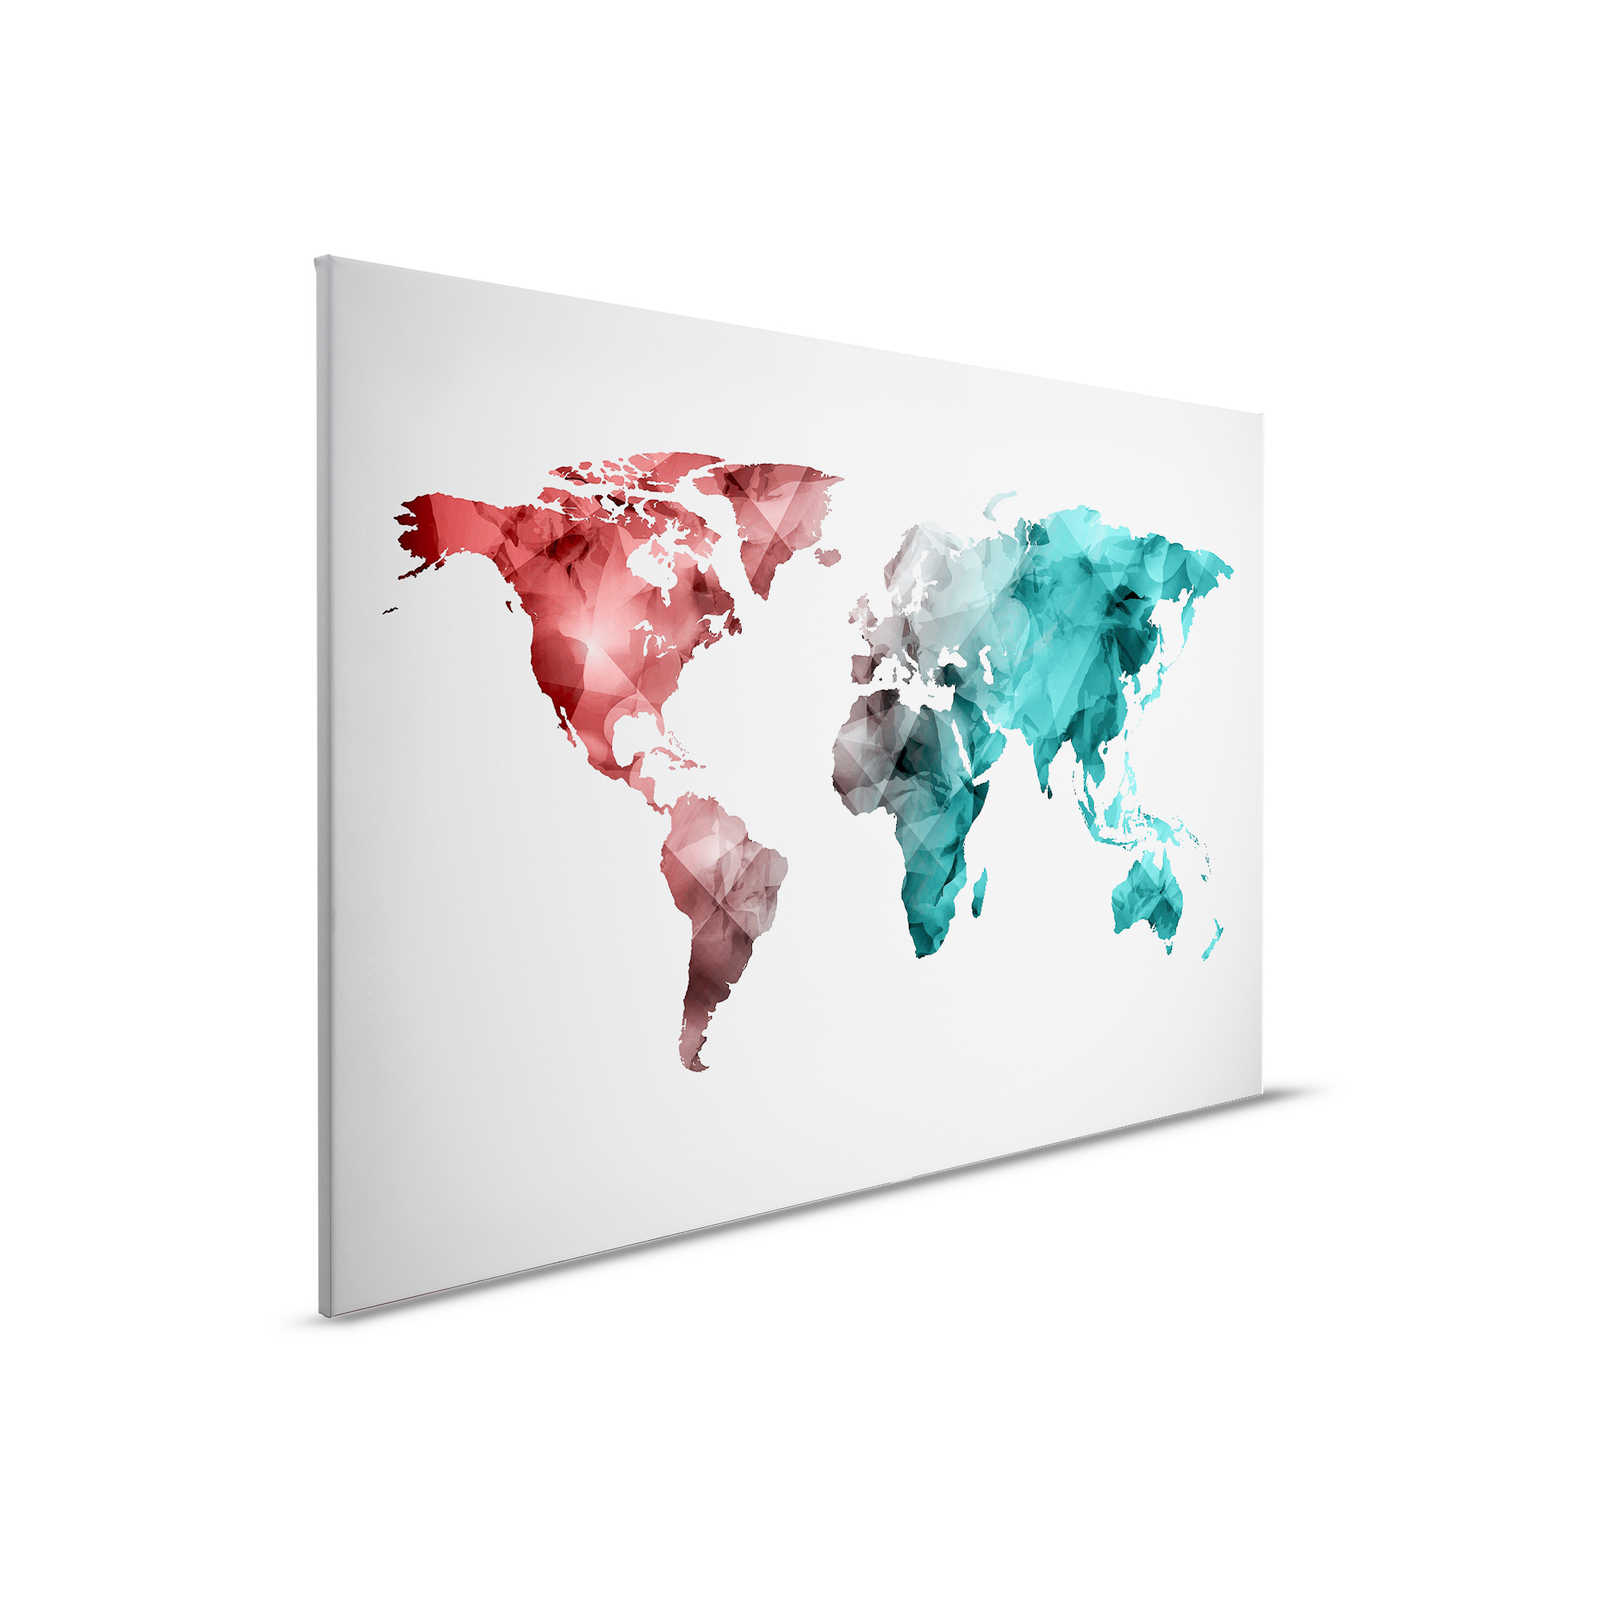         Leinwand mit Weltkarte aus grafischen Elementen | WorldGrafic 2 – 0,90 m x 0,60 m
    